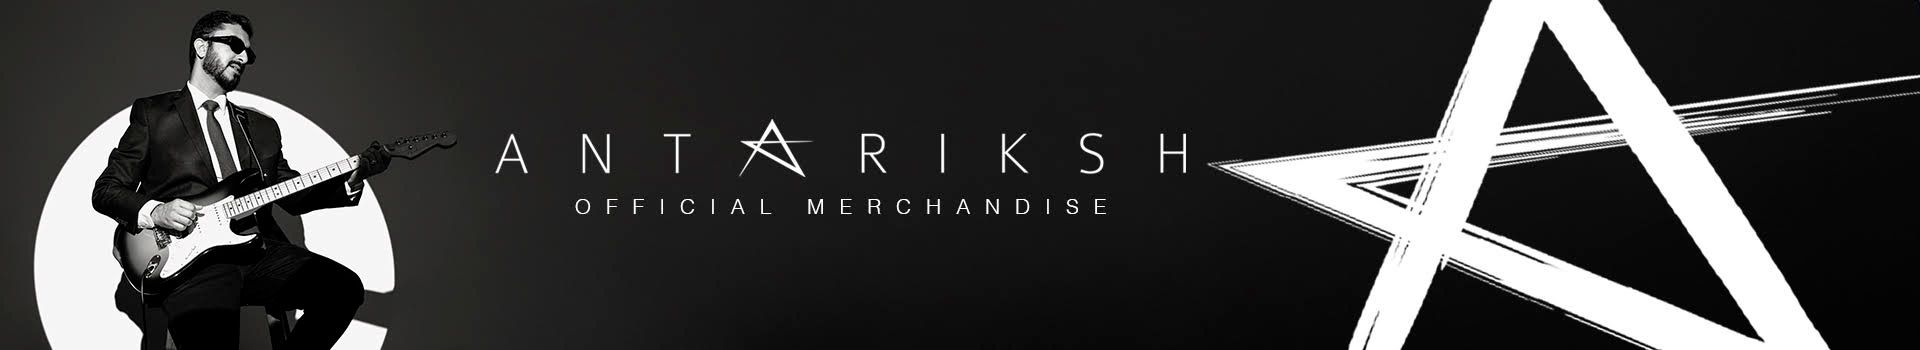 Antariksh - Official Merchandise